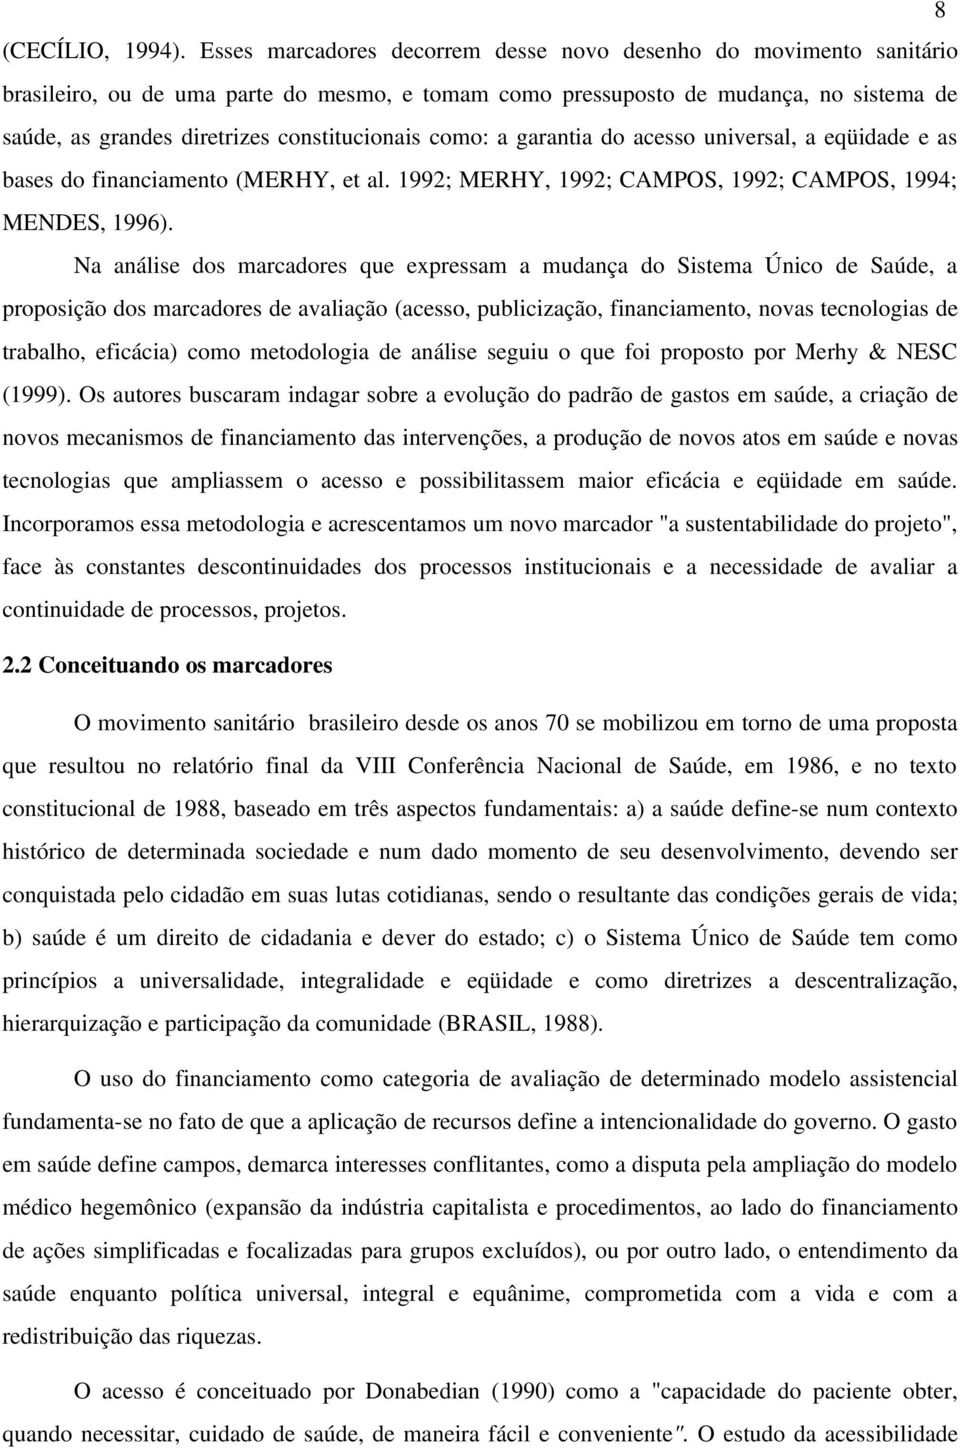 constitucionais como: a garantia do acesso universal, a eqüidade e as bases do financiamento (MERHY, et al. 1992; MERHY, 1992; CAMPOS, 1992; CAMPOS, 1994; MENDES, 1996).